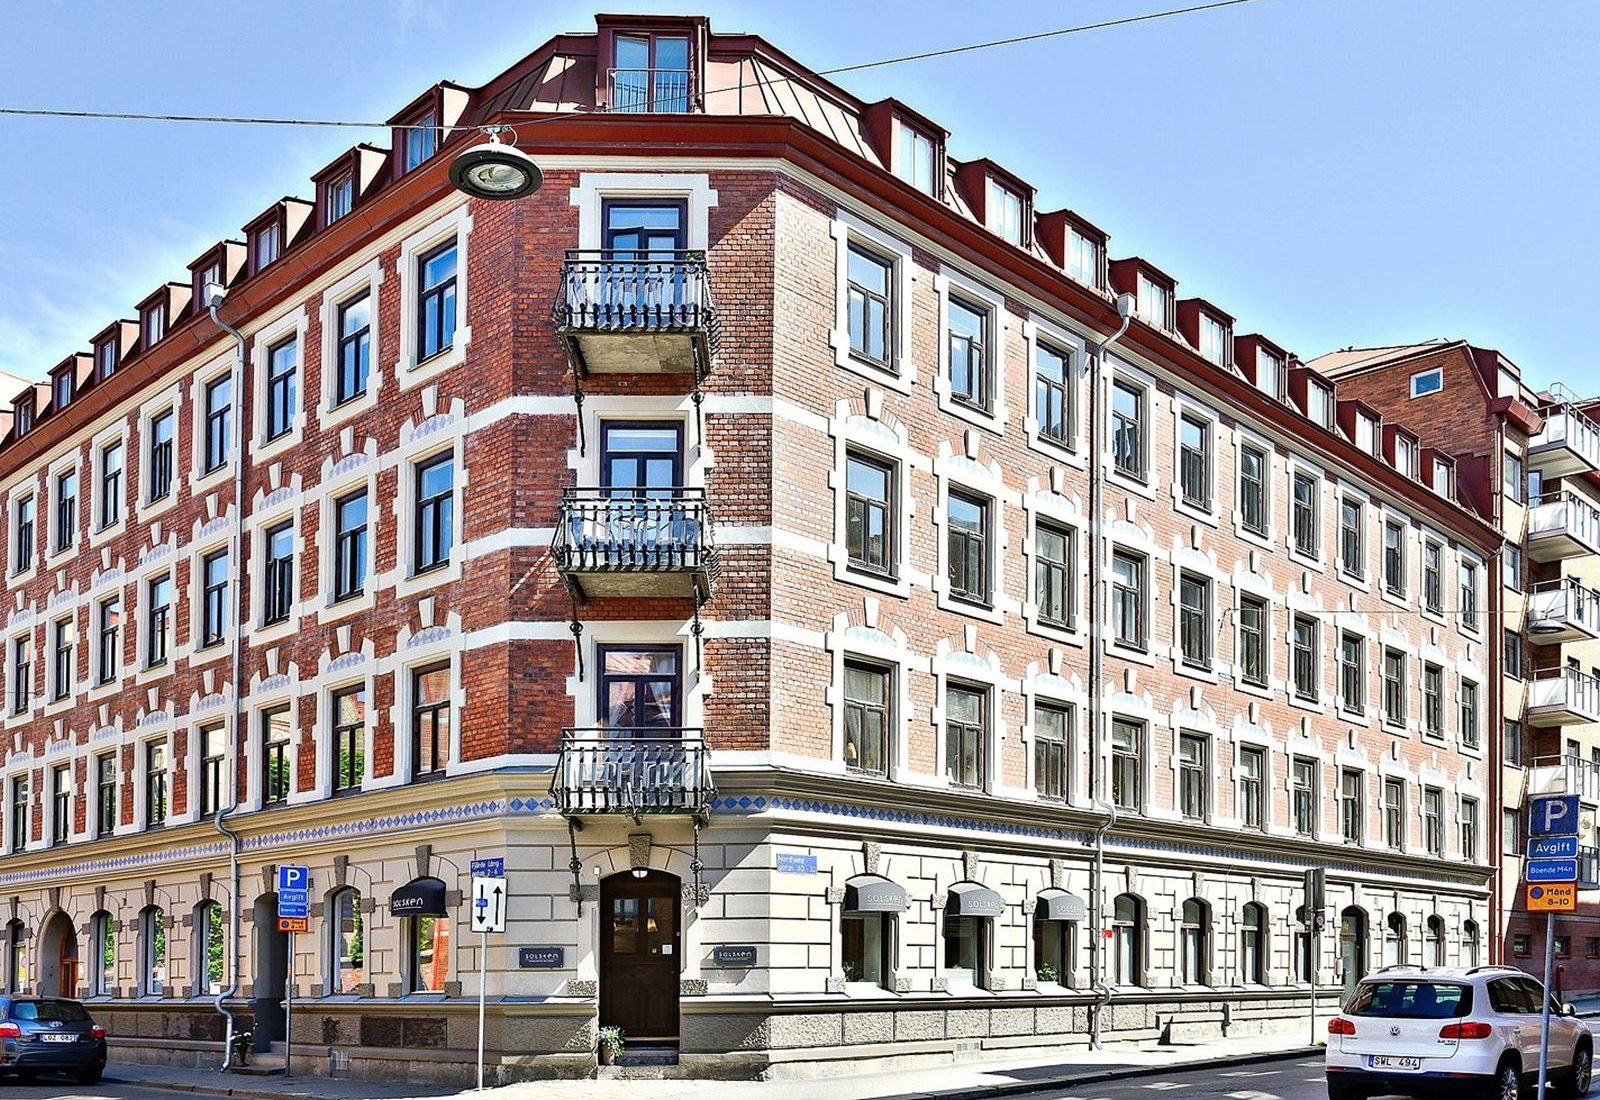 Nordhemsgatan 30 i Linné i Göteborg är ett exempel på den typ av byggnad som White Arkitekter menar att Brick Studios skulle anknyta till. Foto: Bjurfors